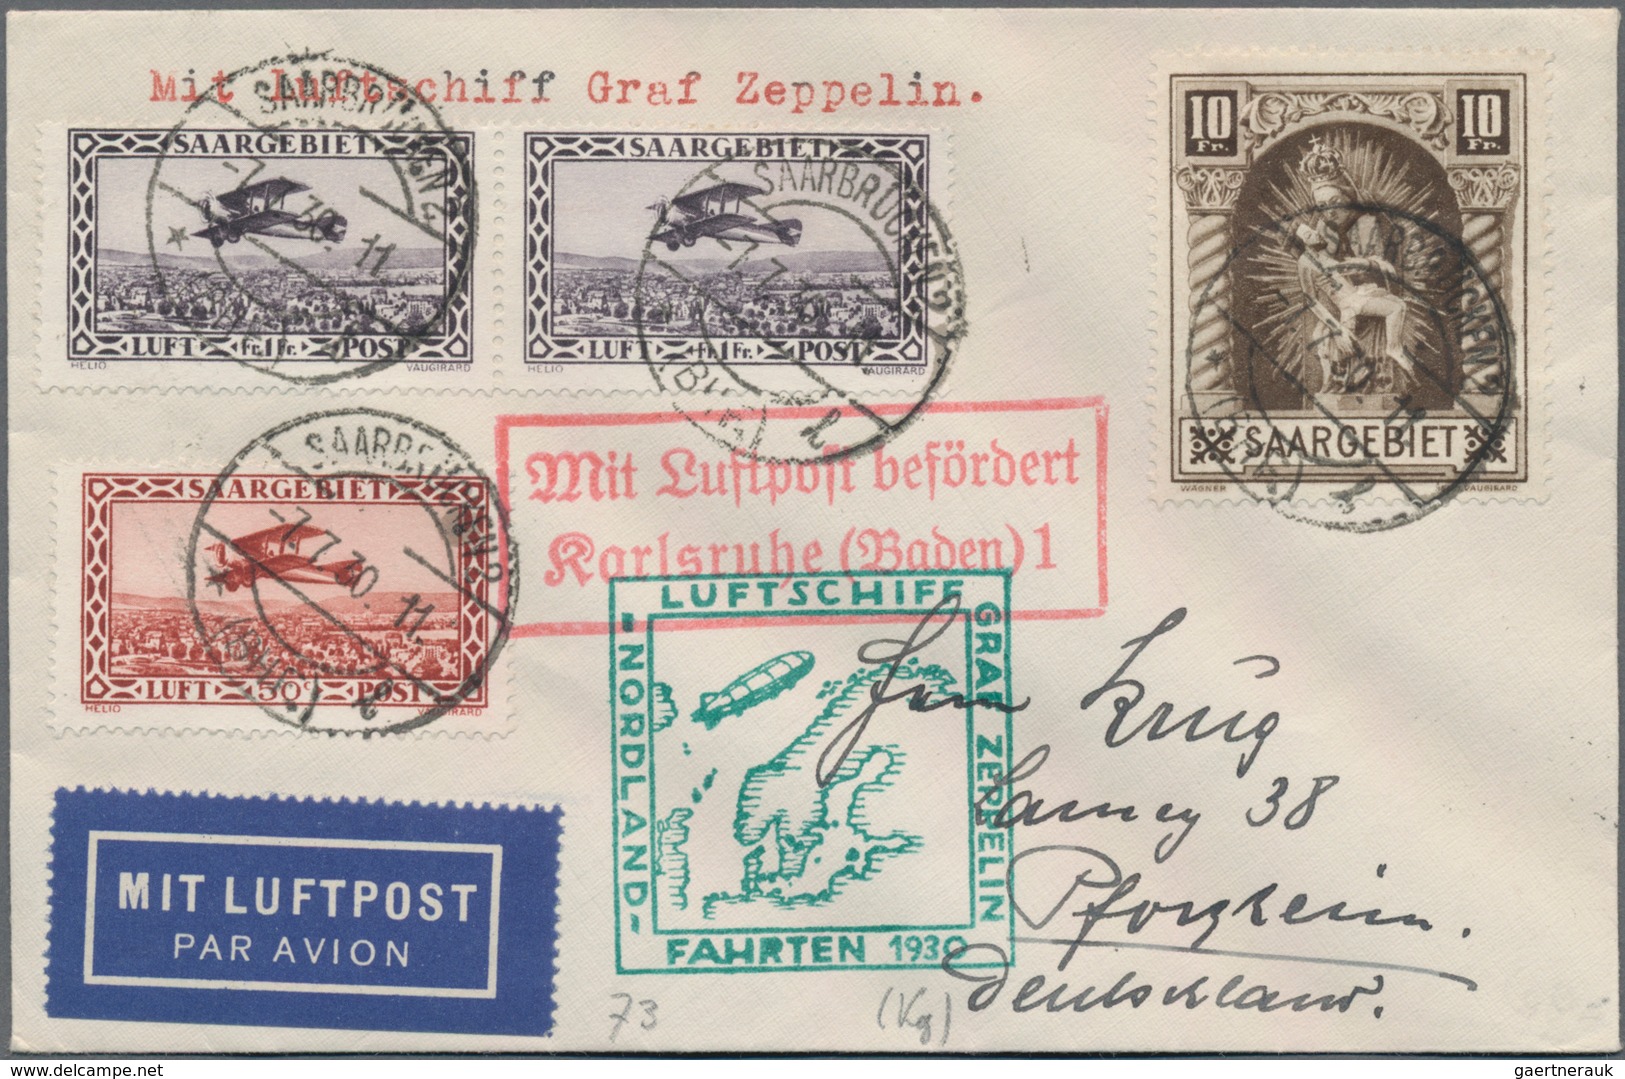 Flugpost Europa: 1919-1955, toller Posten mit über 150 Briefen, Karten und Belegen, Schwerpunkt Zepp